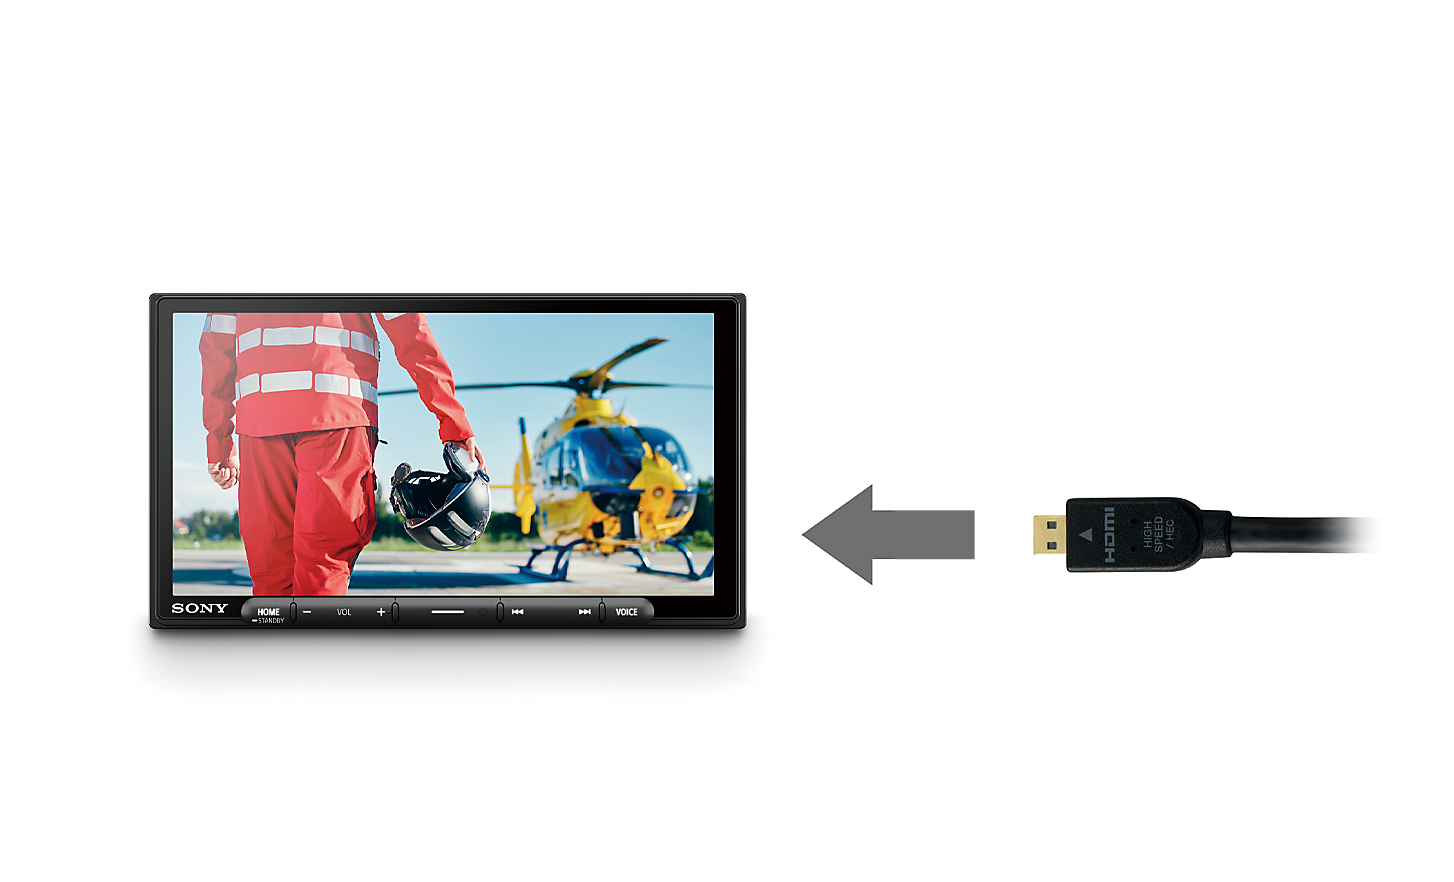 Слика од HDMI-кабел со стрелка што покажува кон XAV-AX6050, на чиј екран со прикажува пилот и хеликоптер